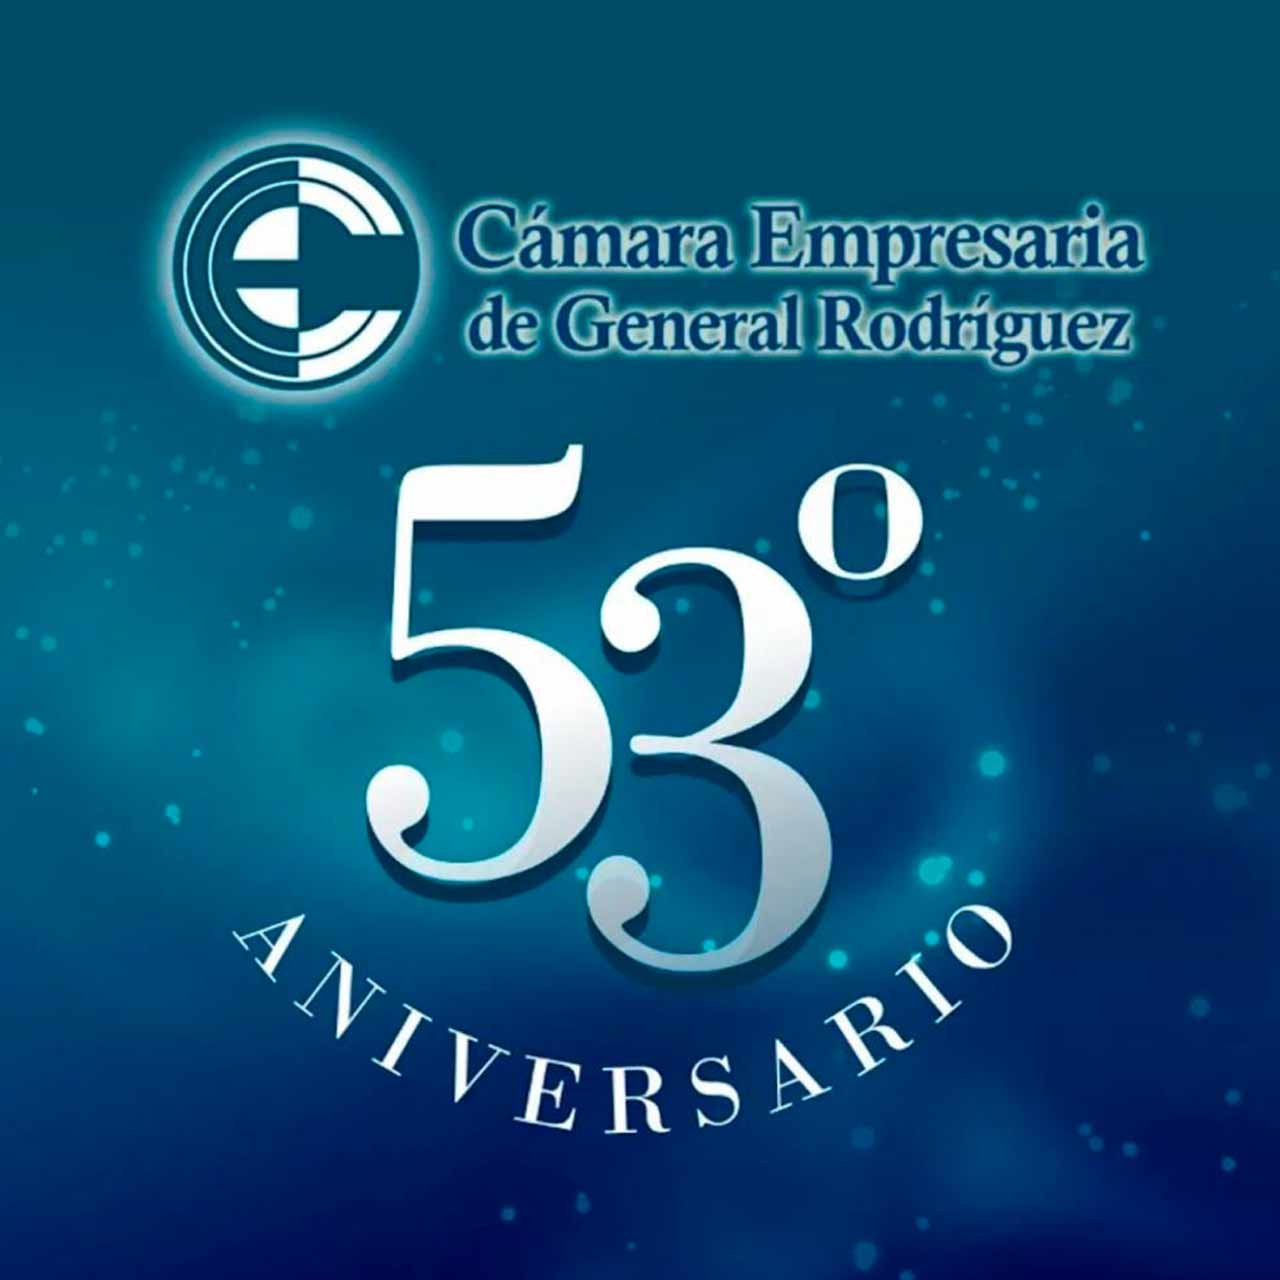 53º Aniversario de la Cámara Empresaria